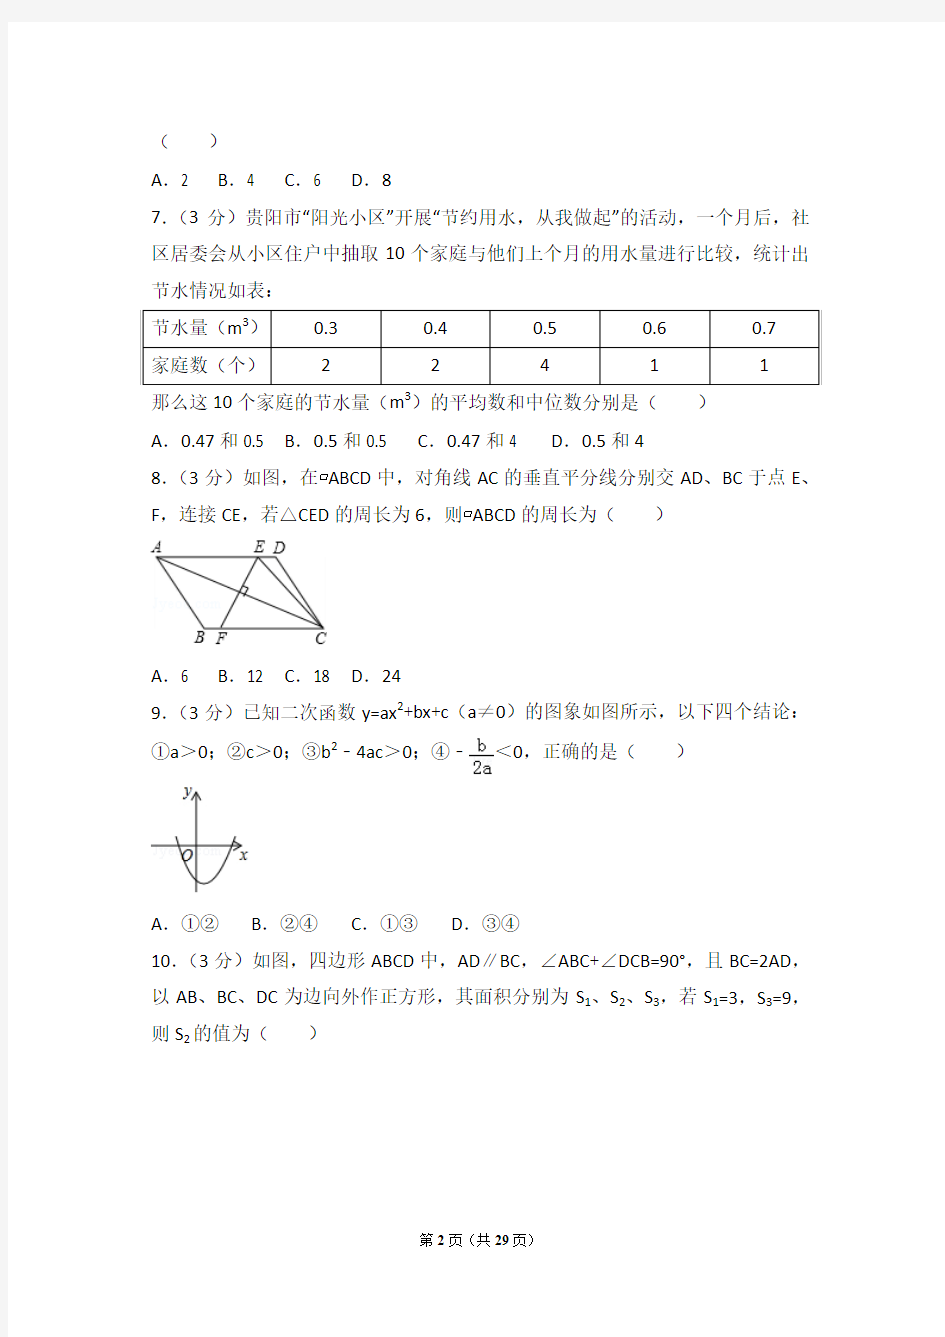 2017年贵州省贵阳市中考数学试卷(含详细答案解析)中考真题